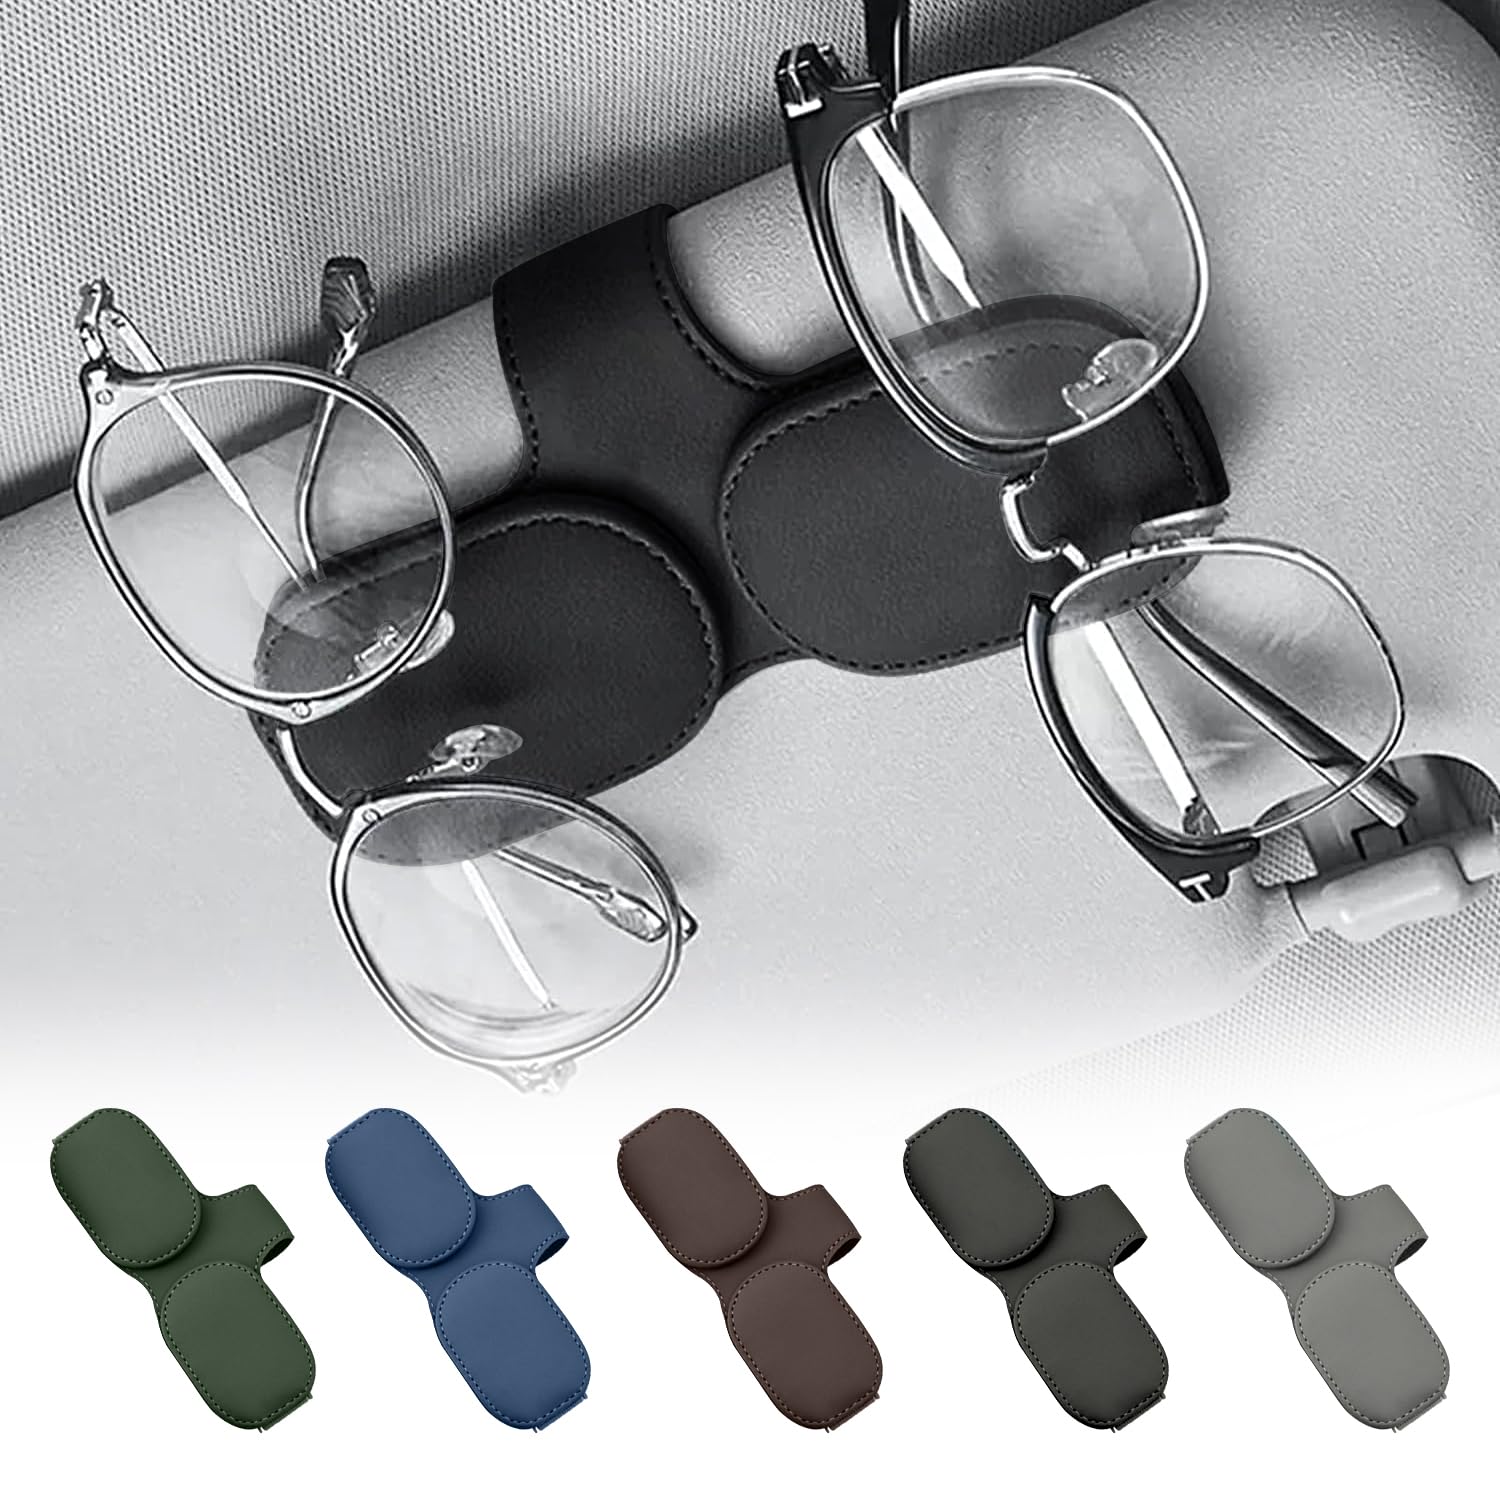 Brillenhalter für Auto,Doppelschichtiger Brillenhalter für Auto Sonnenblende,Leder Brillenhalter für Auto,Brillenhalter für Auto Sonnenblende,Sonnenbrillen Halterung für Auto Visier Zubehör (Schwarz) von Lonimia